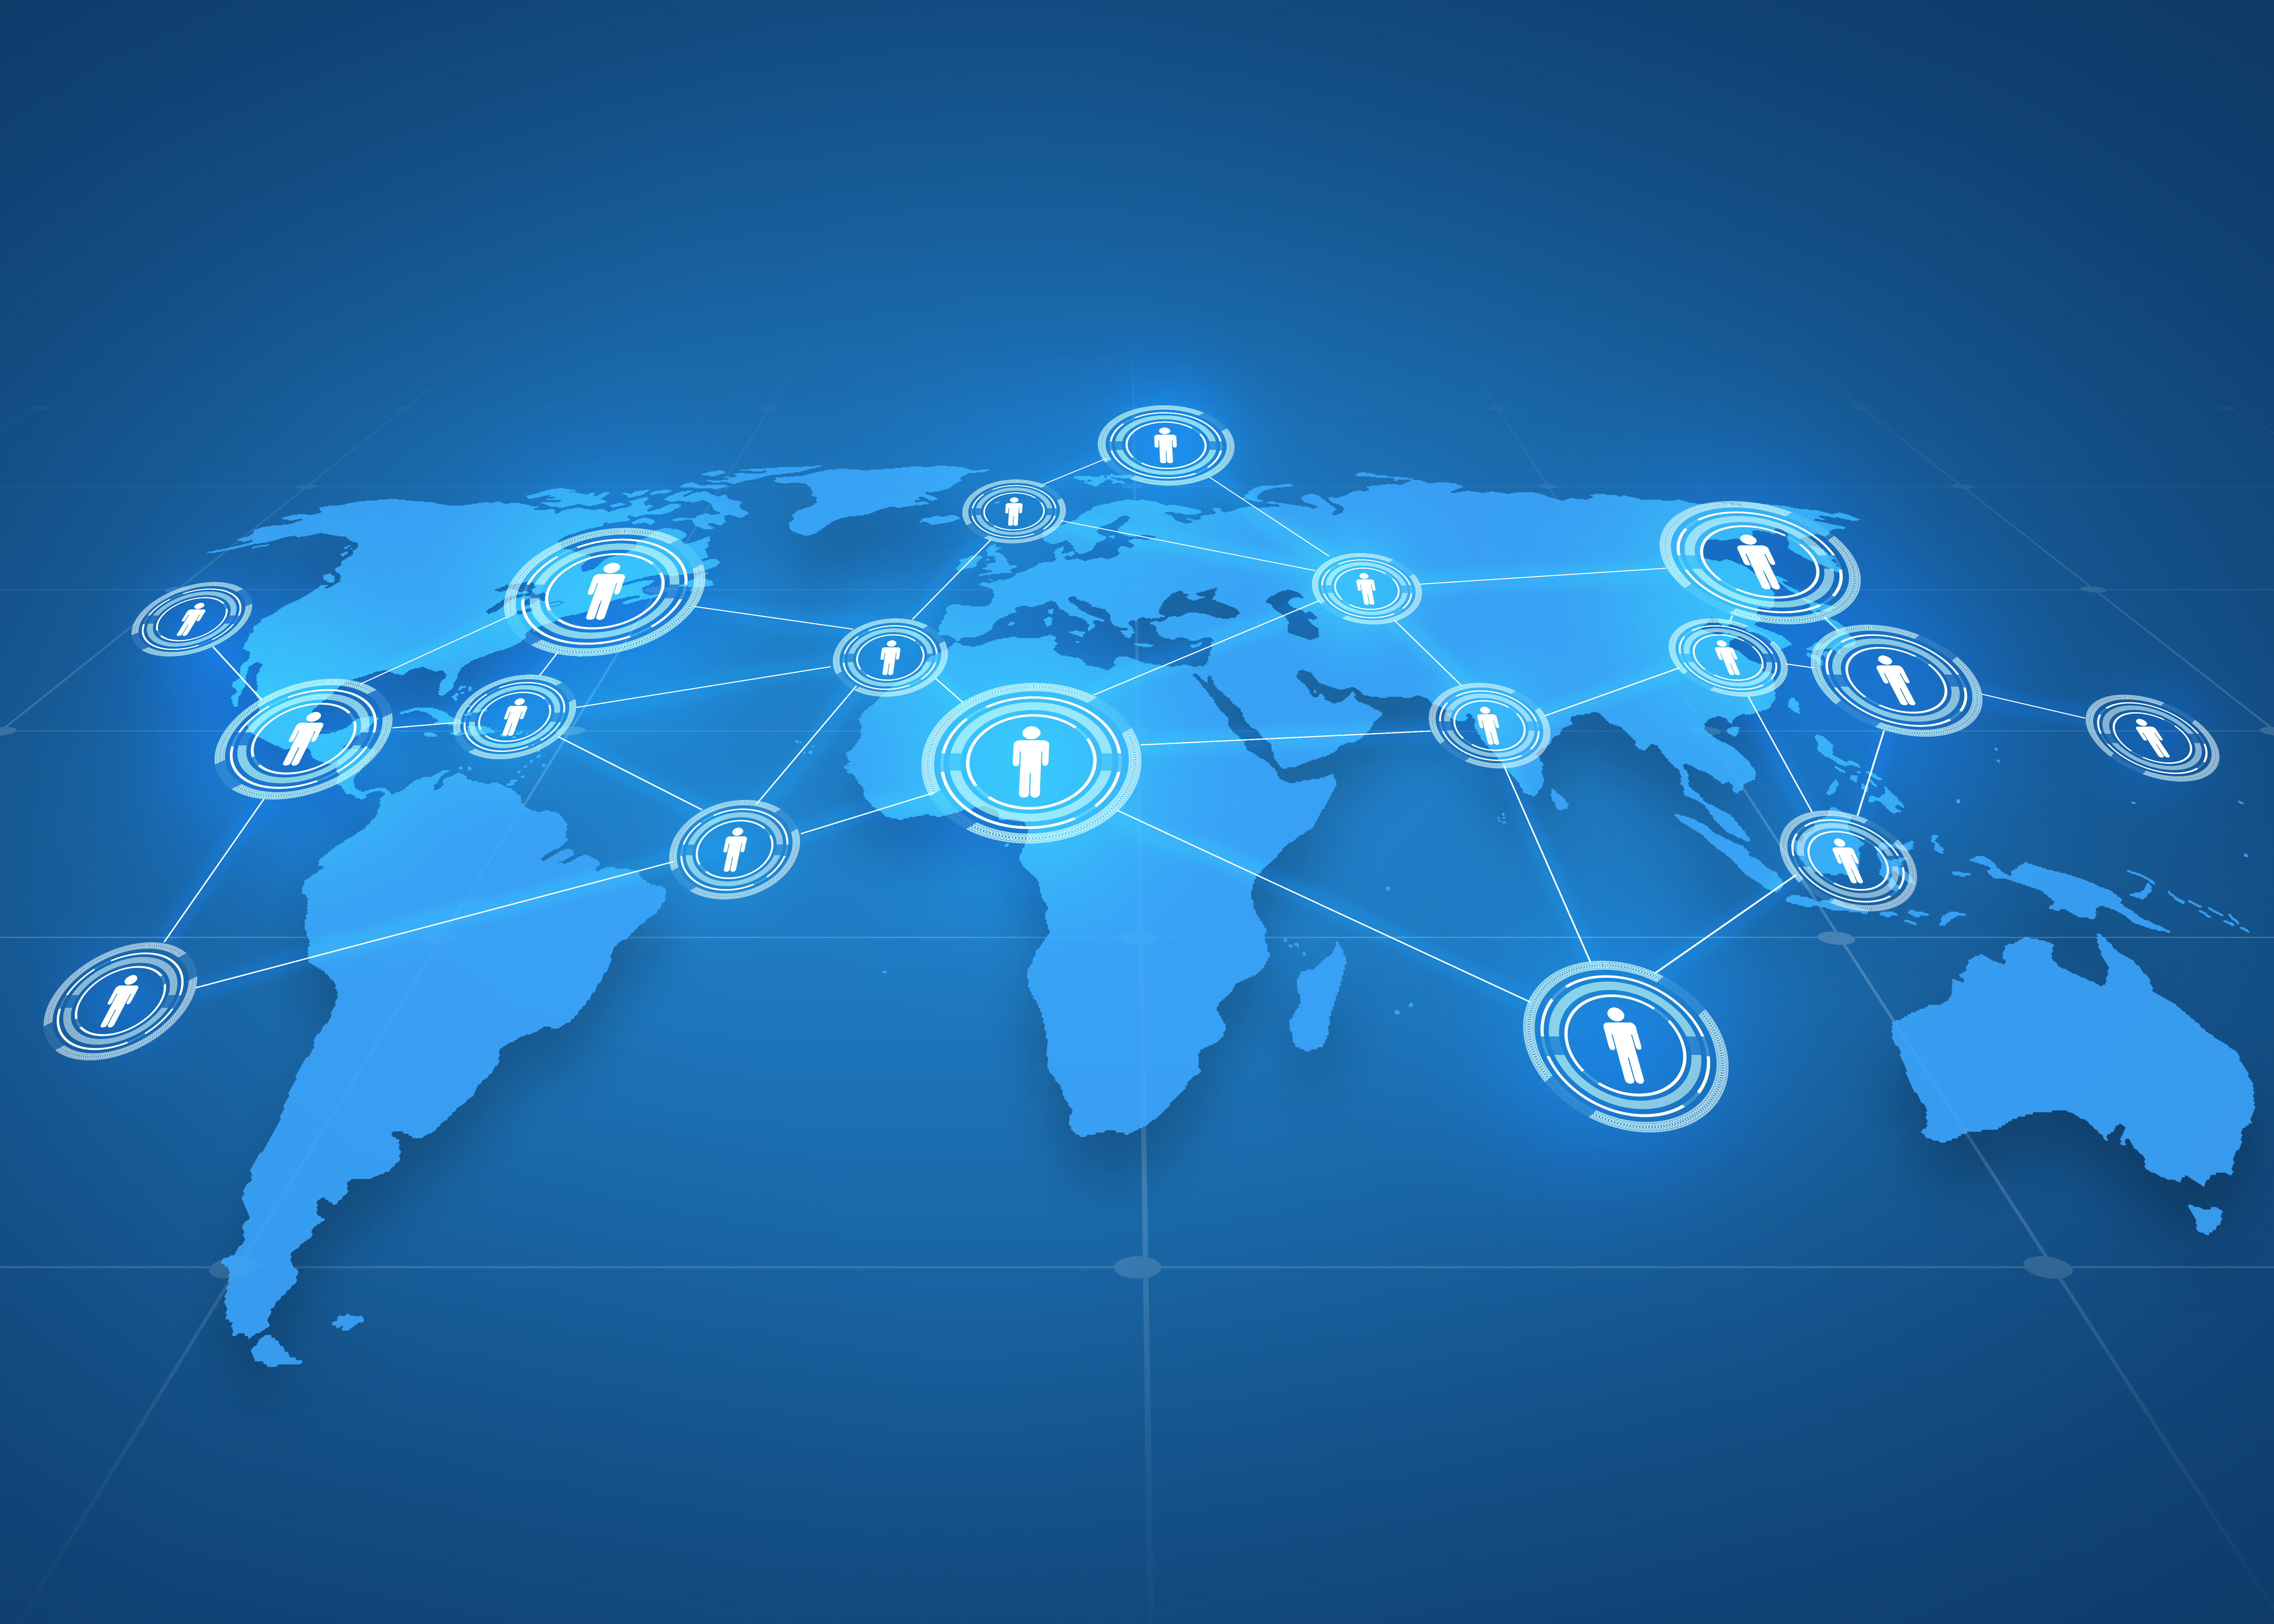 वैश्विक व्यापार, सोशल नेटवर्क, मास मीडिया और प्रौद्योगिकी अवधारणा - नीले पृष्ठभूमि पर लोगों के प्रतीक के साथ विश्व मानचित्र प्रक्षेपण